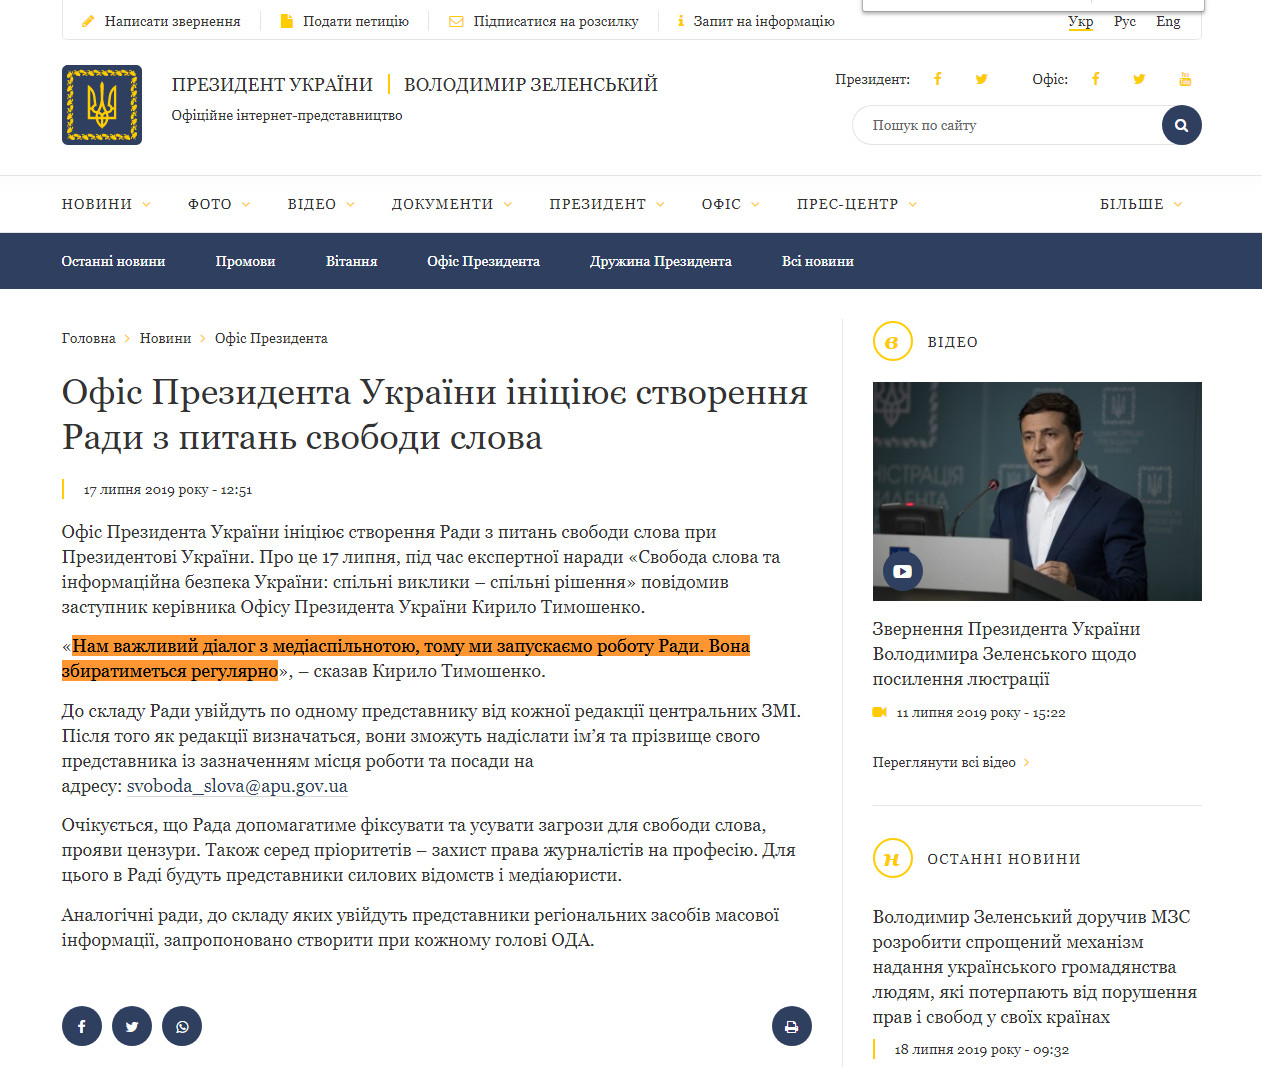 https://www.president.gov.ua/news/ofis-prezidenta-ukrayini-iniciyuye-stvorennya-radi-z-pitan-s-56473?fbclid=IwAR1-DihsupBCsaYv5pN_uJy6OqoCerlH2jZYYW9pNCguonv6kmIpzvoNlKI